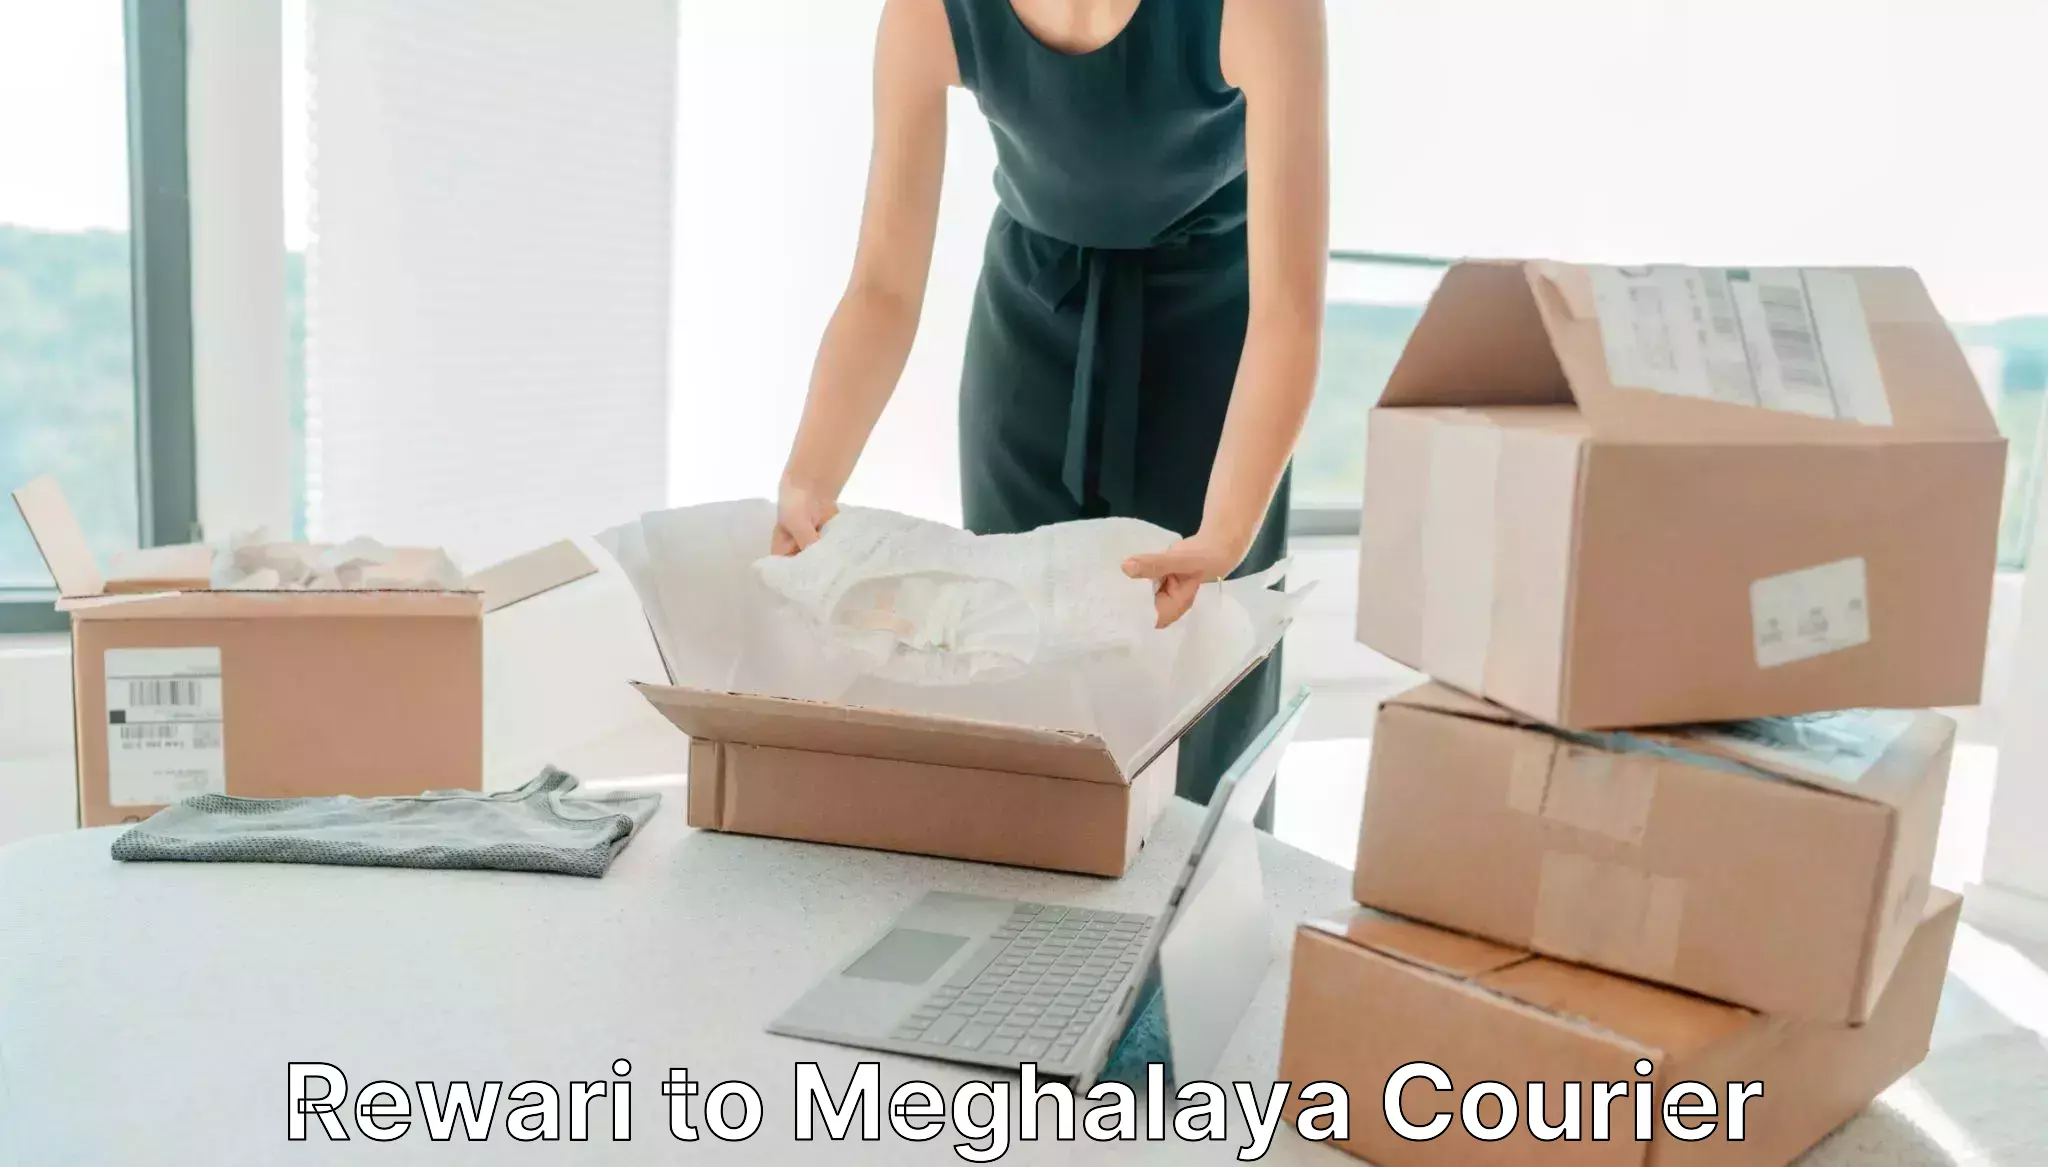 Cost-effective courier options Rewari to Jaintia Hills